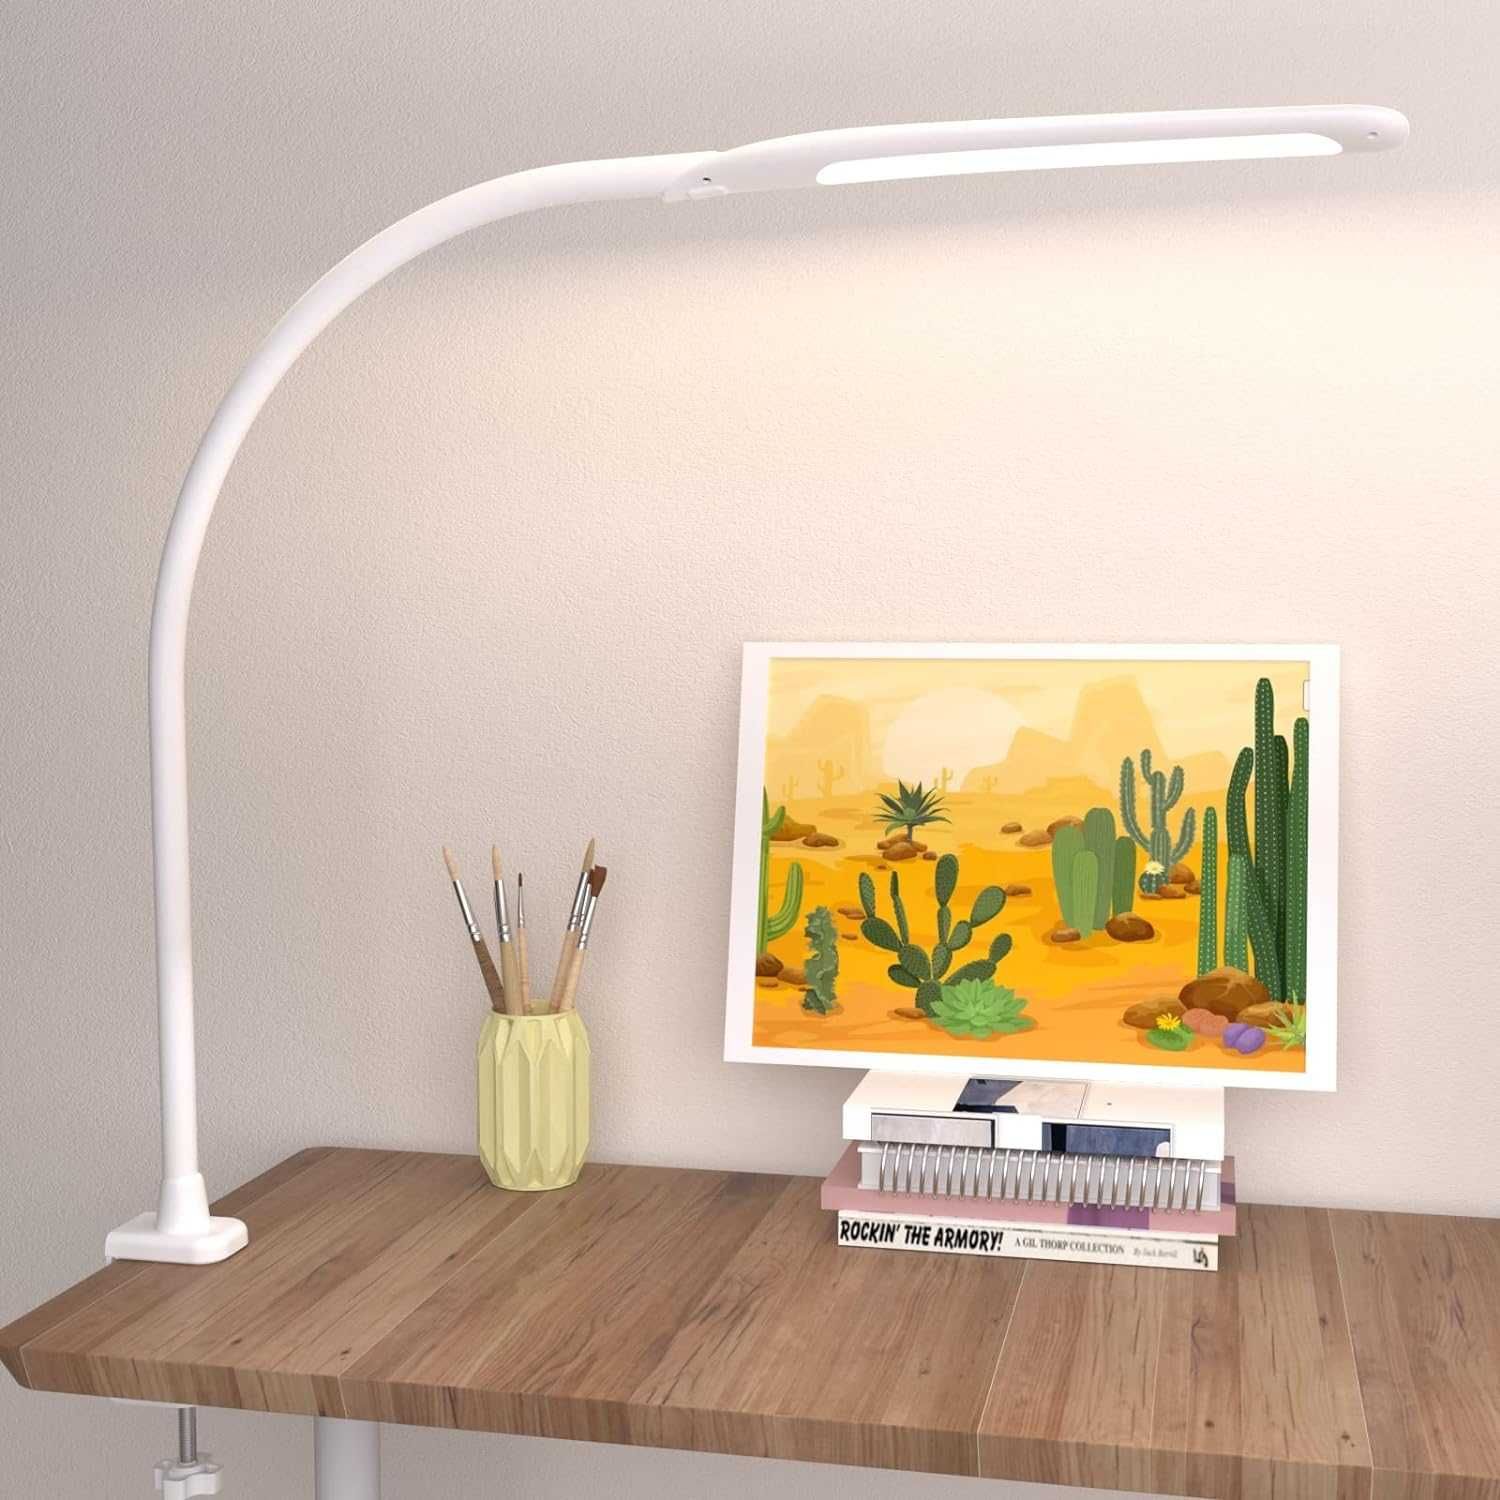 Lampa biurkowa LED z zaciskiem, elastyczna lampa na Łabędziej szyi